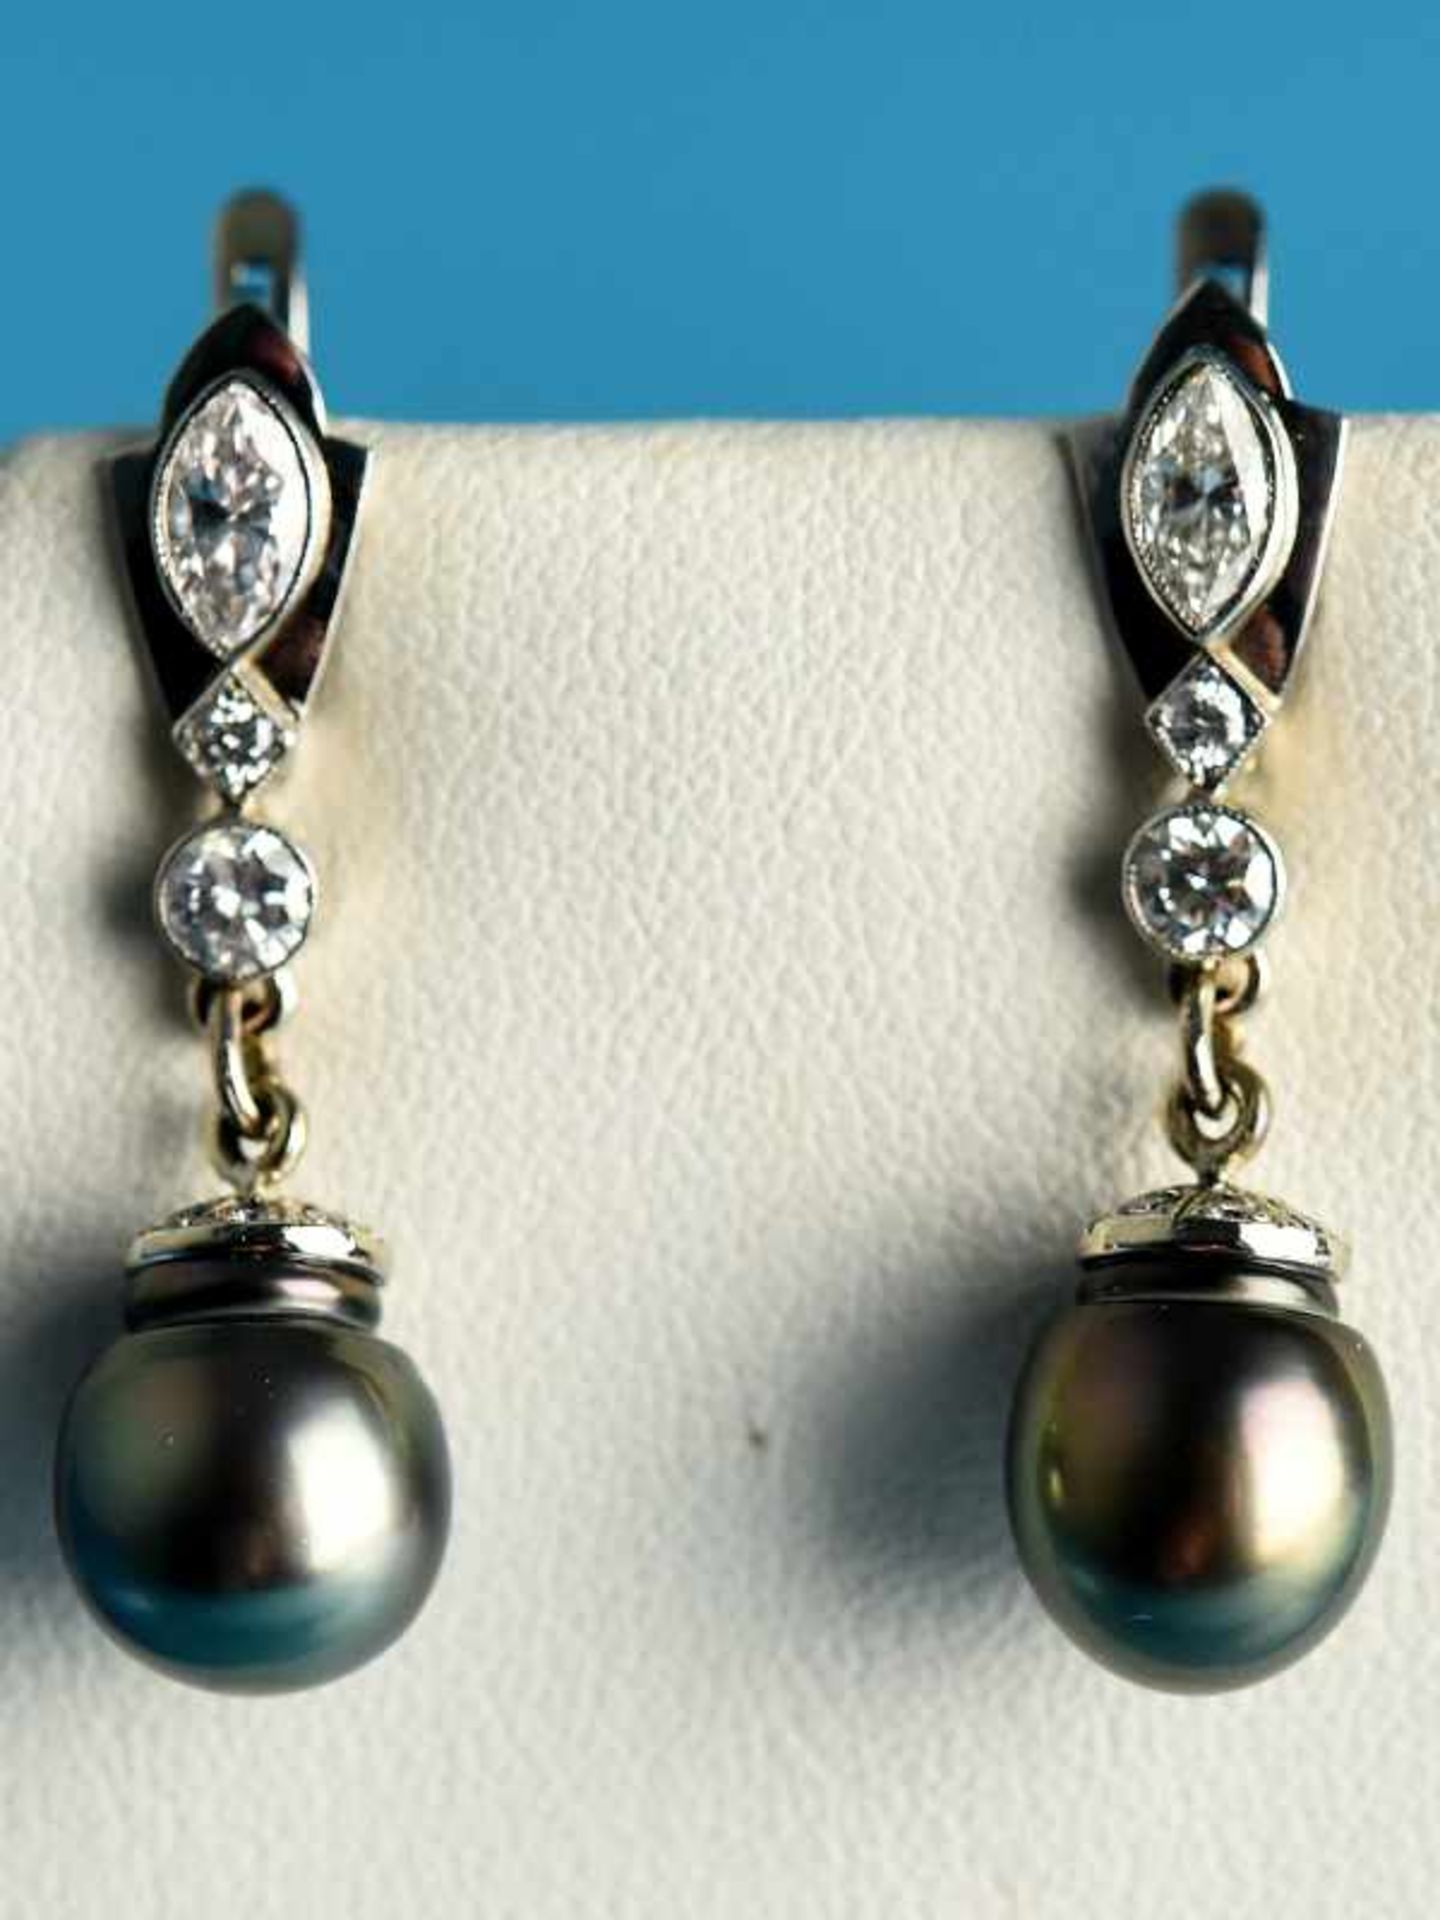 Paar Ohrgehänge mit Naturperlen und Diamanten, zusammen 1,5 ct, 20. Jh. 750/- Weißgold.